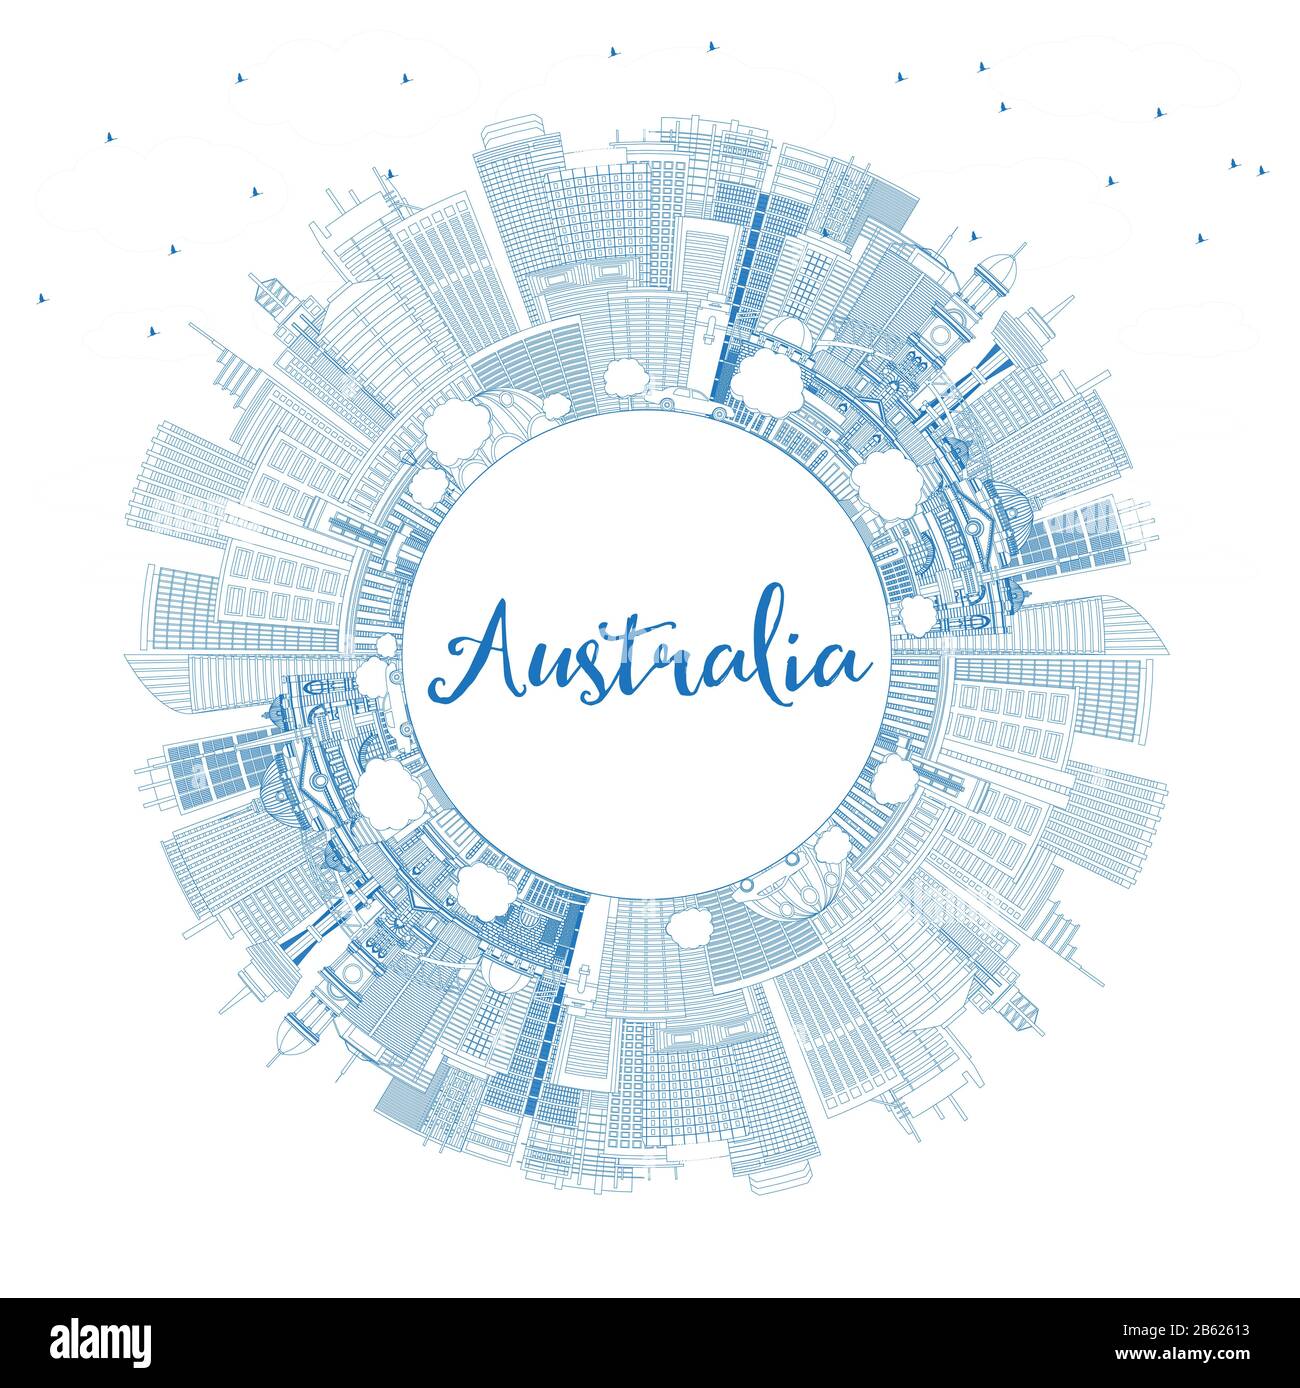 Profilo Australia City Skyline Con Edifici Blu E Copy Space. Illustrazione Vettoriale. Concetto Di Turismo Con Architettura Storica. Australia. Illustrazione Vettoriale